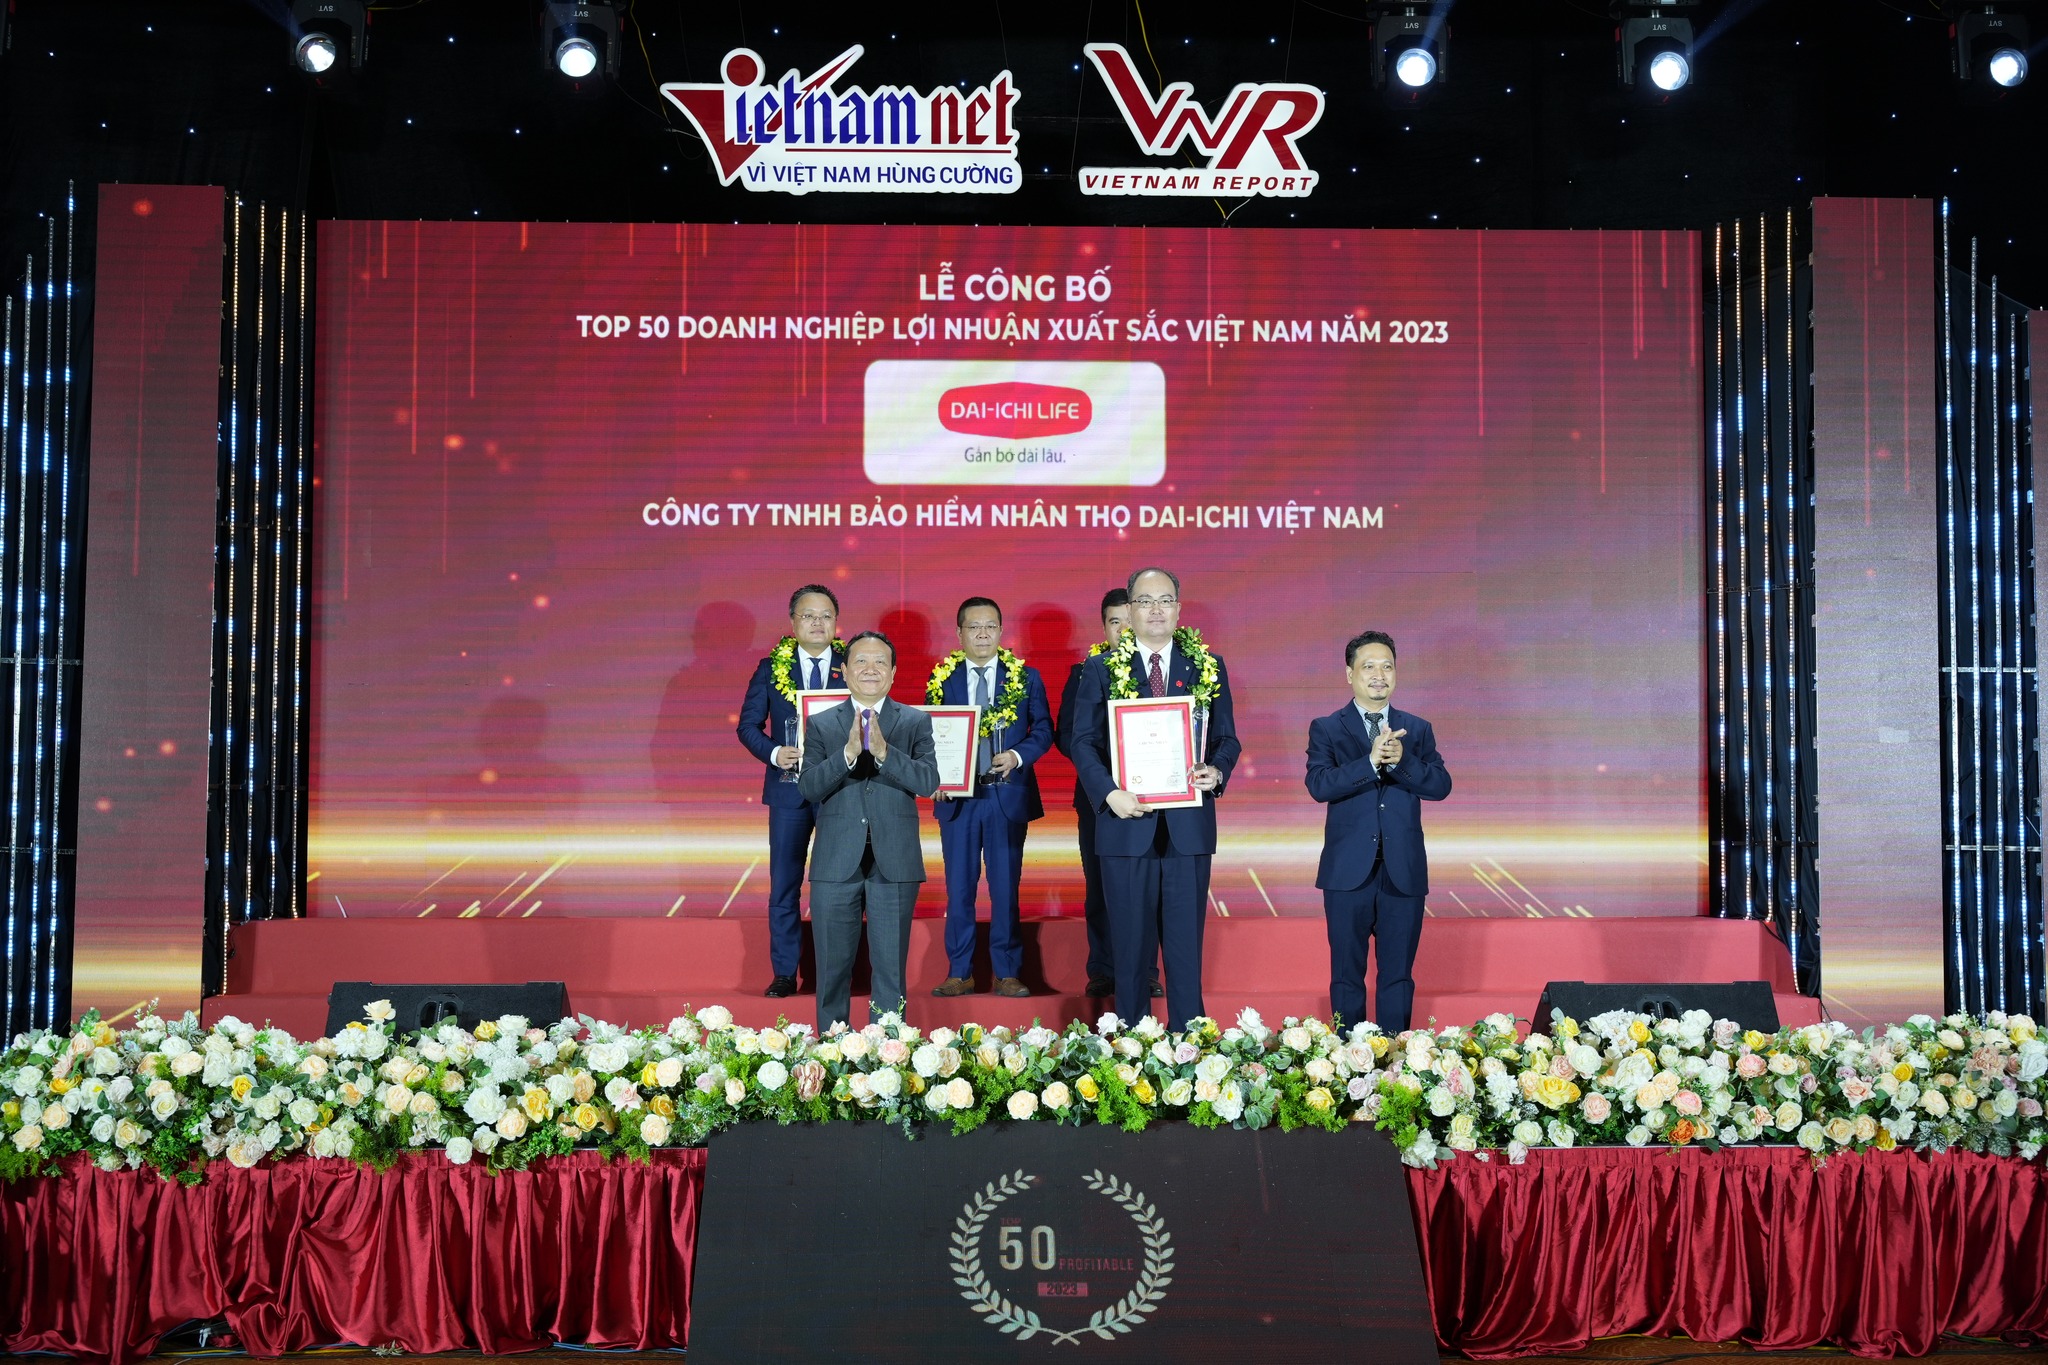 Ông Seigo Fujimaru - Phó Tổng Giám đốc Điều hành kiêm Phó Tổng Giám đốc Hành chính Tổng hợp Dai-ichi Life Việt Nam nhận giải thưởng “Top 50 Doanh nghiệp Lợi nhuận xuất sắc Việt Nam” (Top 50 Vietnam Best Profitable Companies)